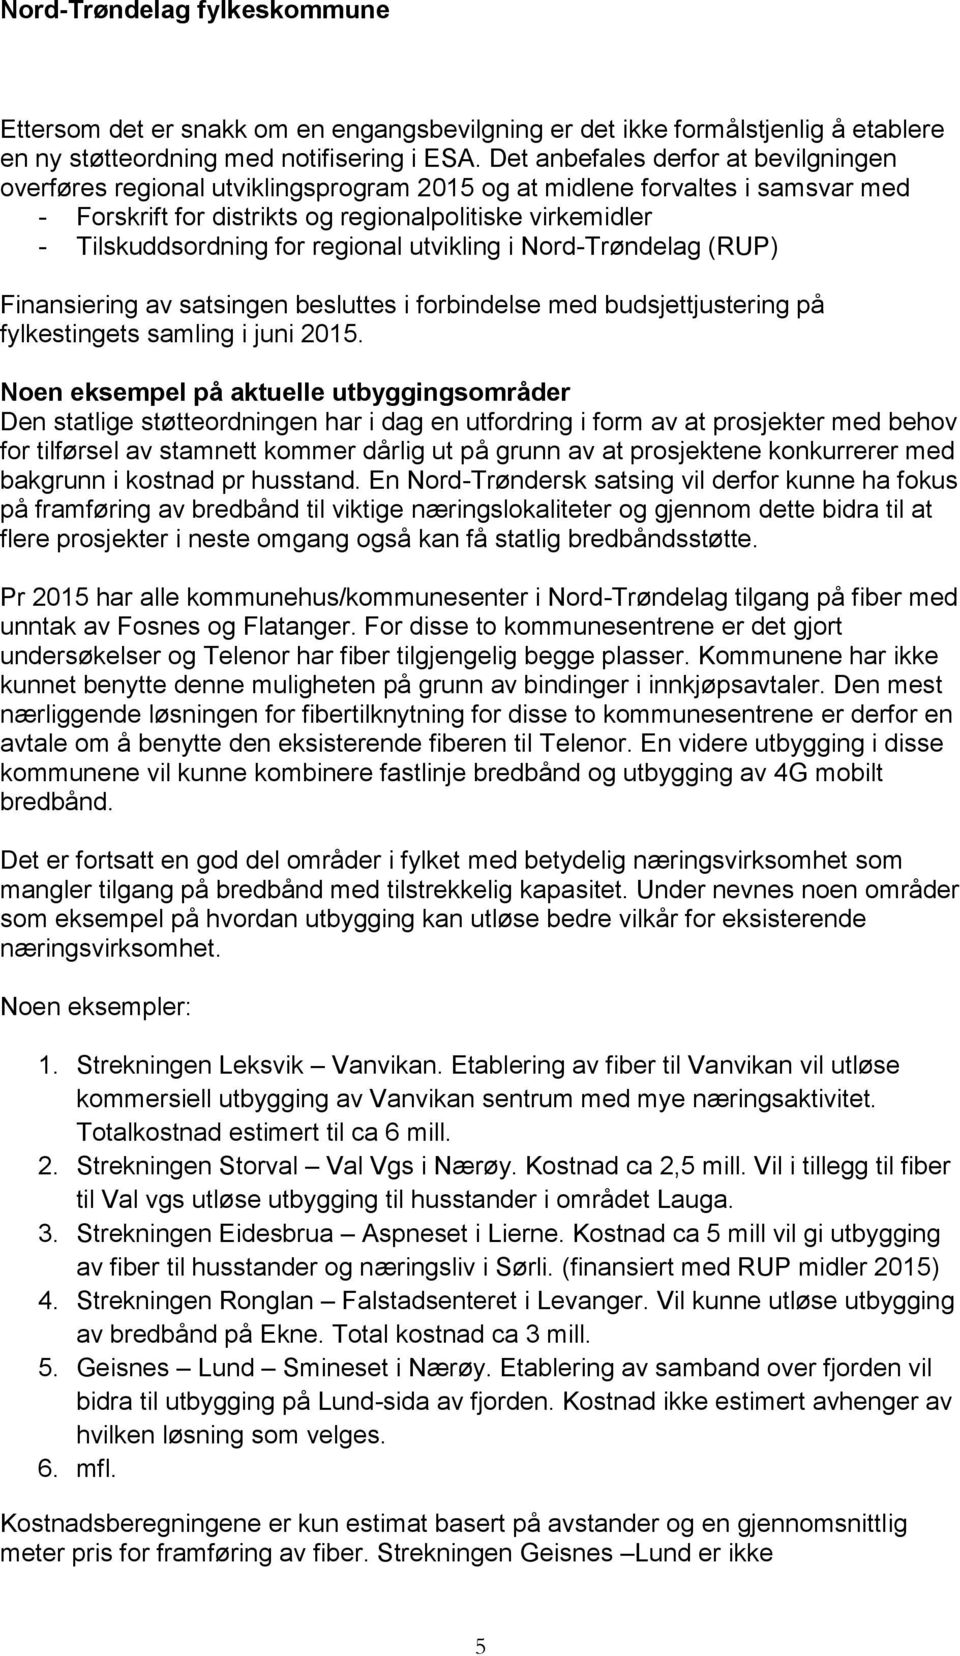 regional utvikling i Nord-Trøndelag (RUP) Finansiering av satsingen besluttes i forbindelse med budsjettjustering på fylkestingets samling i juni 2015.